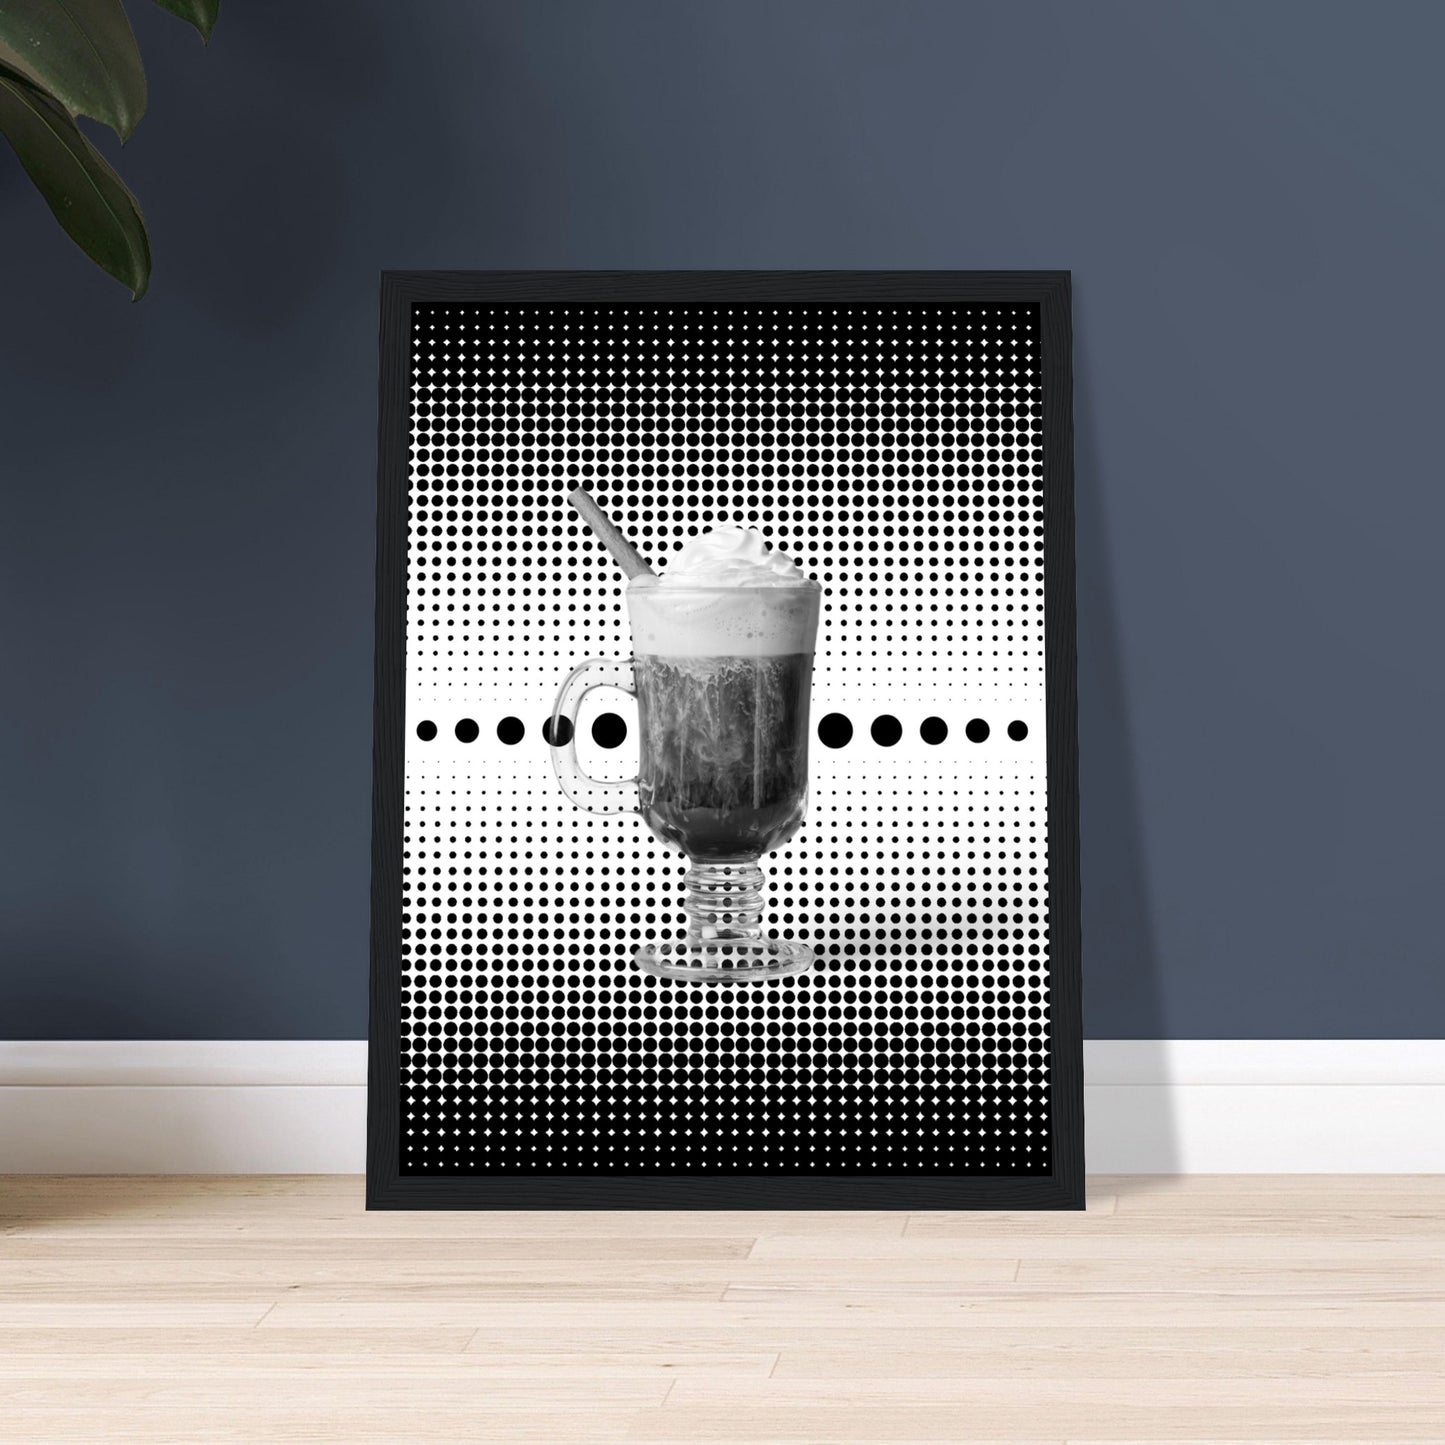 Bild im schwarzem Rahmen mit einem Schwarz weißem Motiv aus schwarzen punkten auf einem weißen Untergrund gepaart eines Schwarzweiß Foto eines Cappuccino auf dem Boden an der Wand angelehnt.